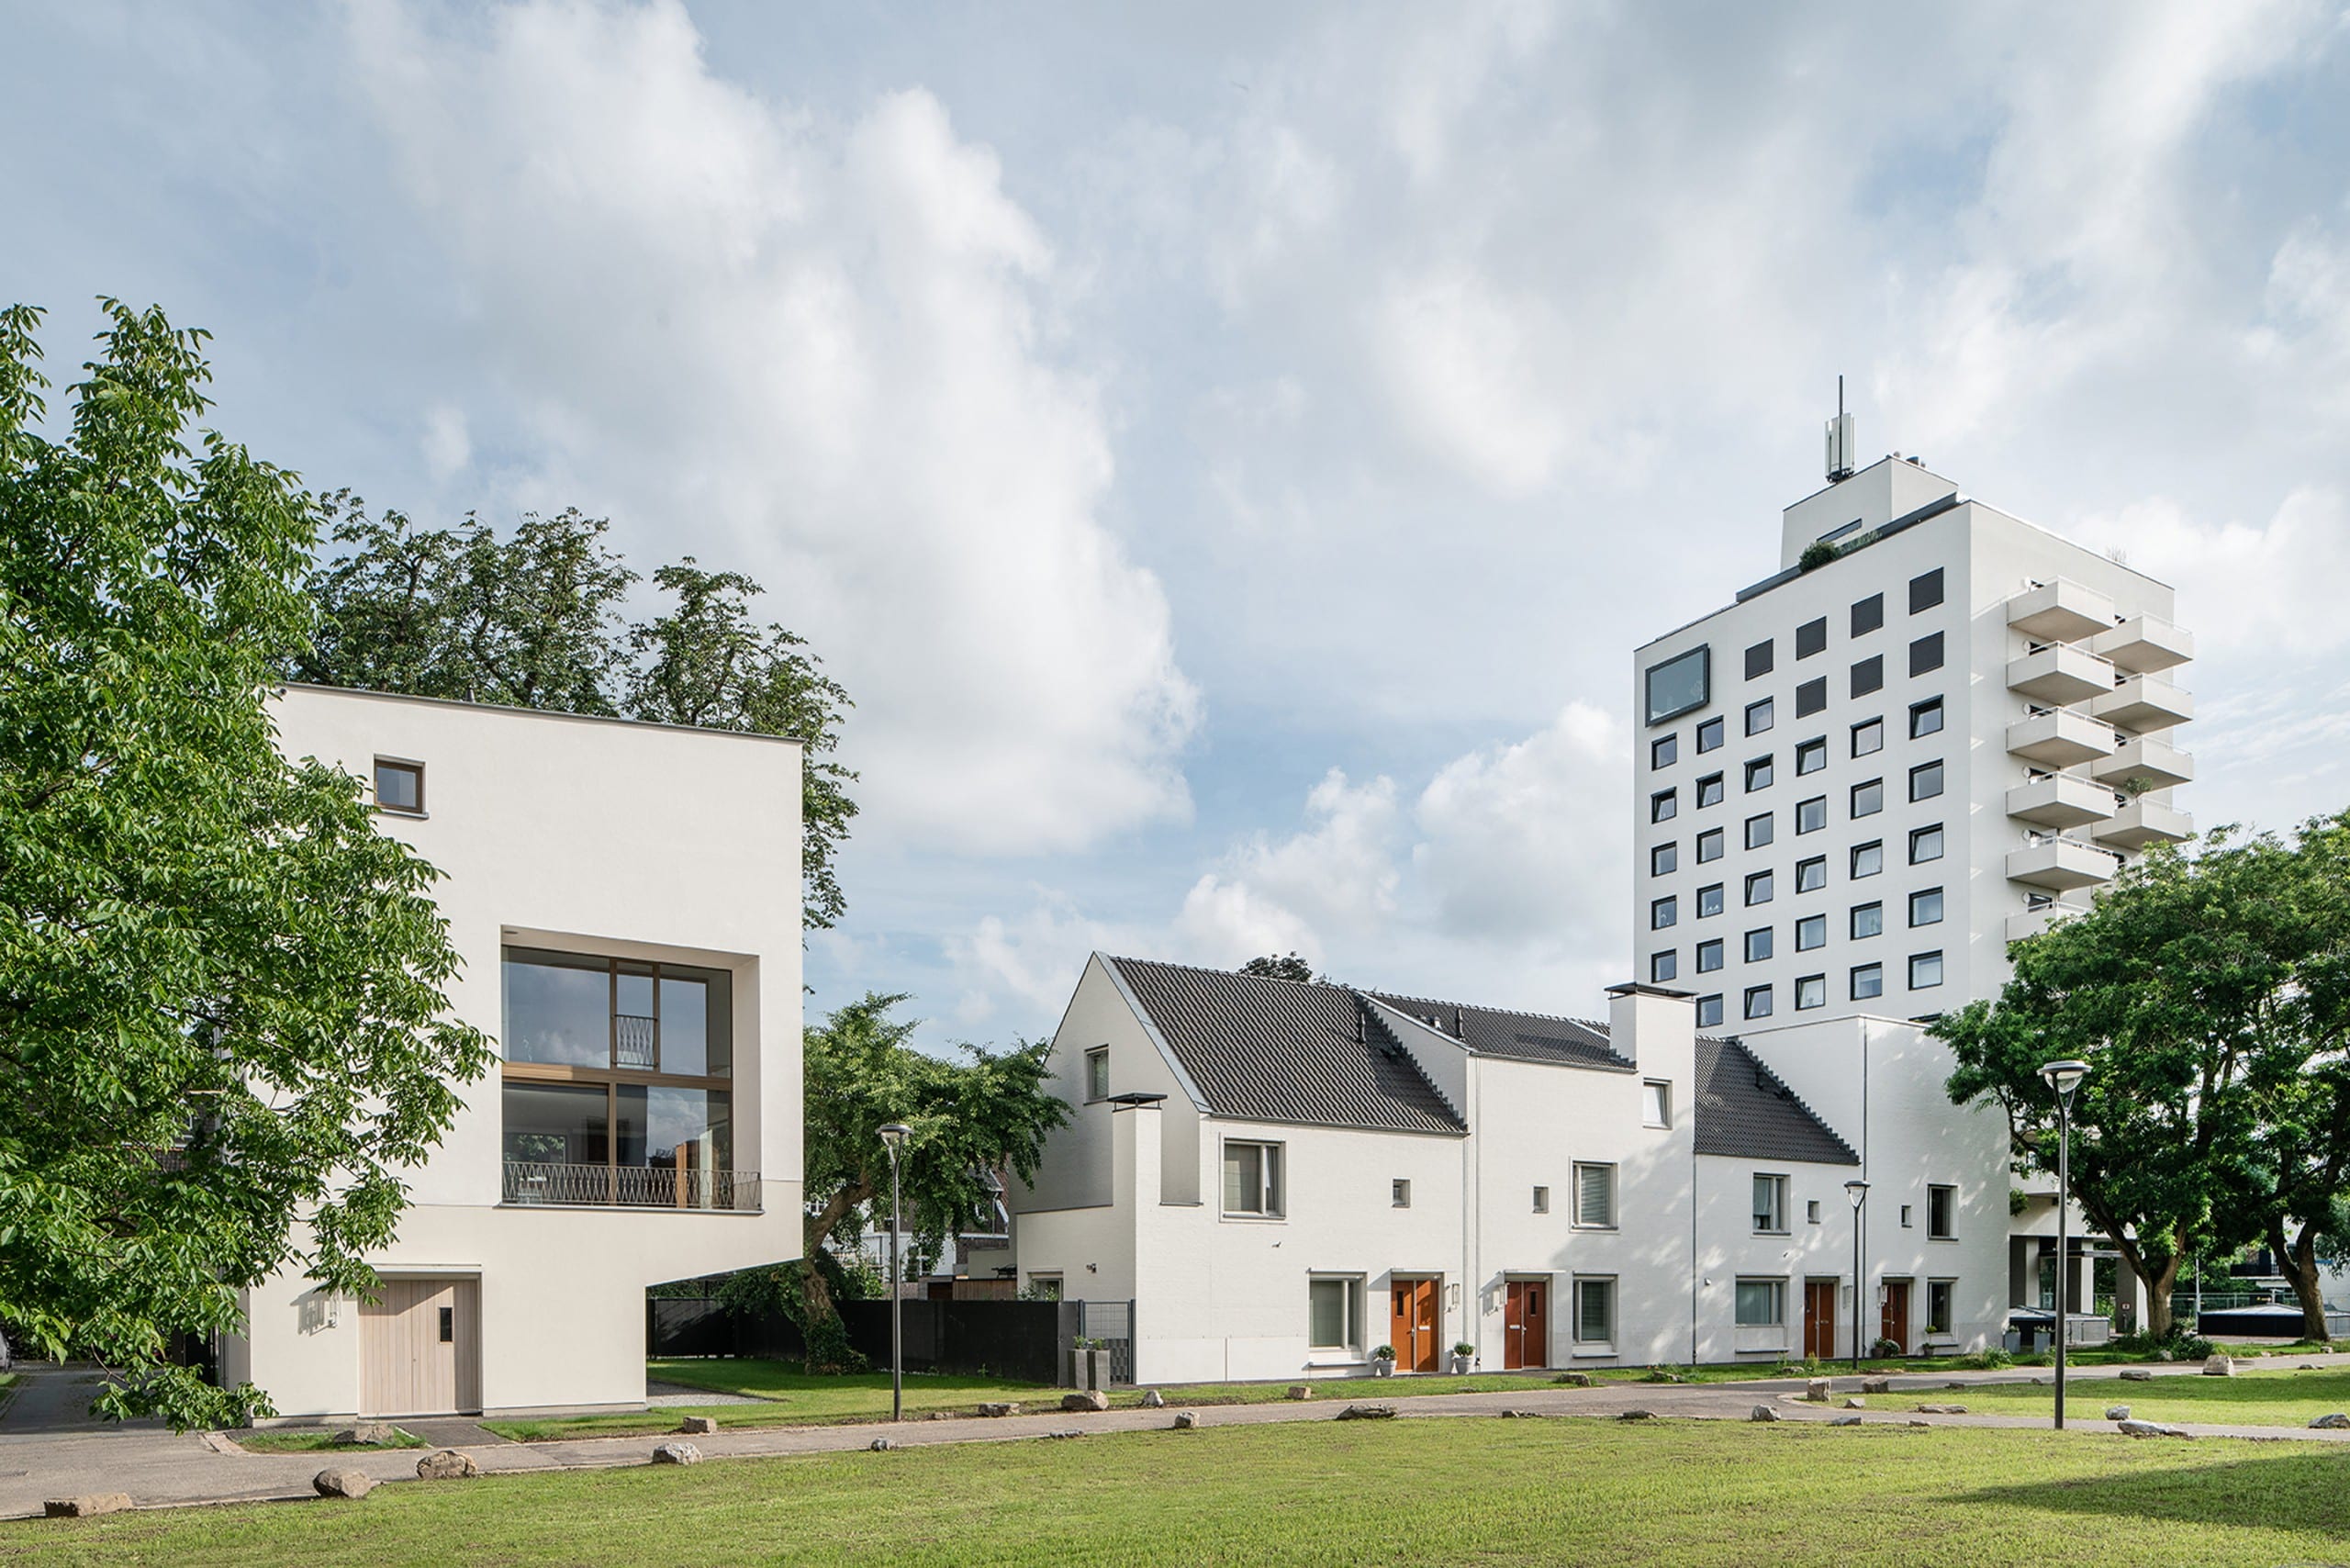 In Maastricht haben die Architekten Martens Willems & Humblé eine kleine Stadtvilla erschaffen, die sich von ihrer Umgebung abhebt. Foto: Philip Driessen